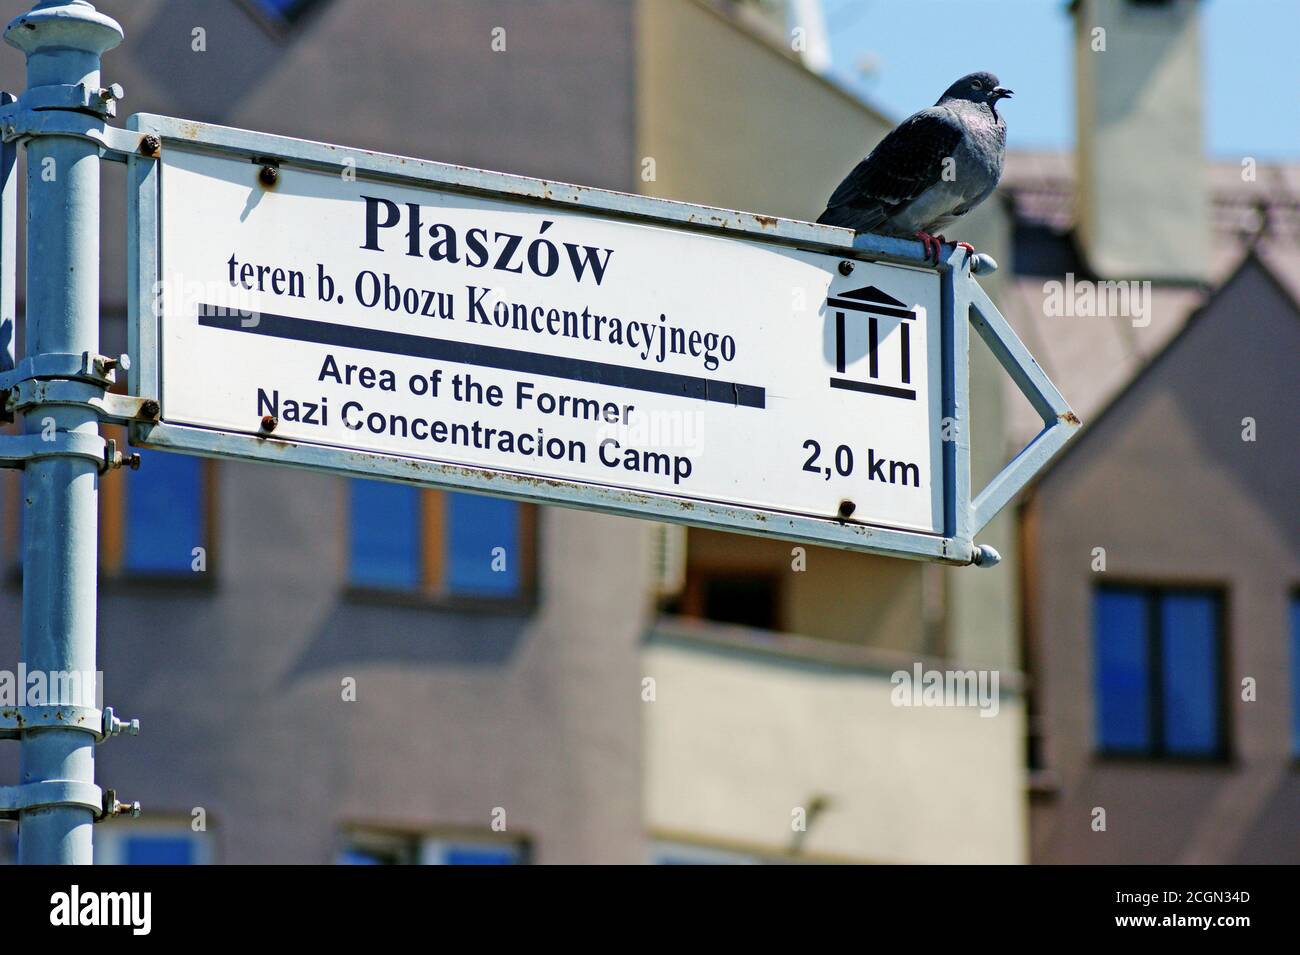 Eine Taube aus der Familie Columbidae sitzt auf einem Schild in Krakau, Polen, in Richtung Plaszow, einem Vorort, der für ein ehemaliges Konzentrationslager der Nazis bekannt ist. Stockfoto